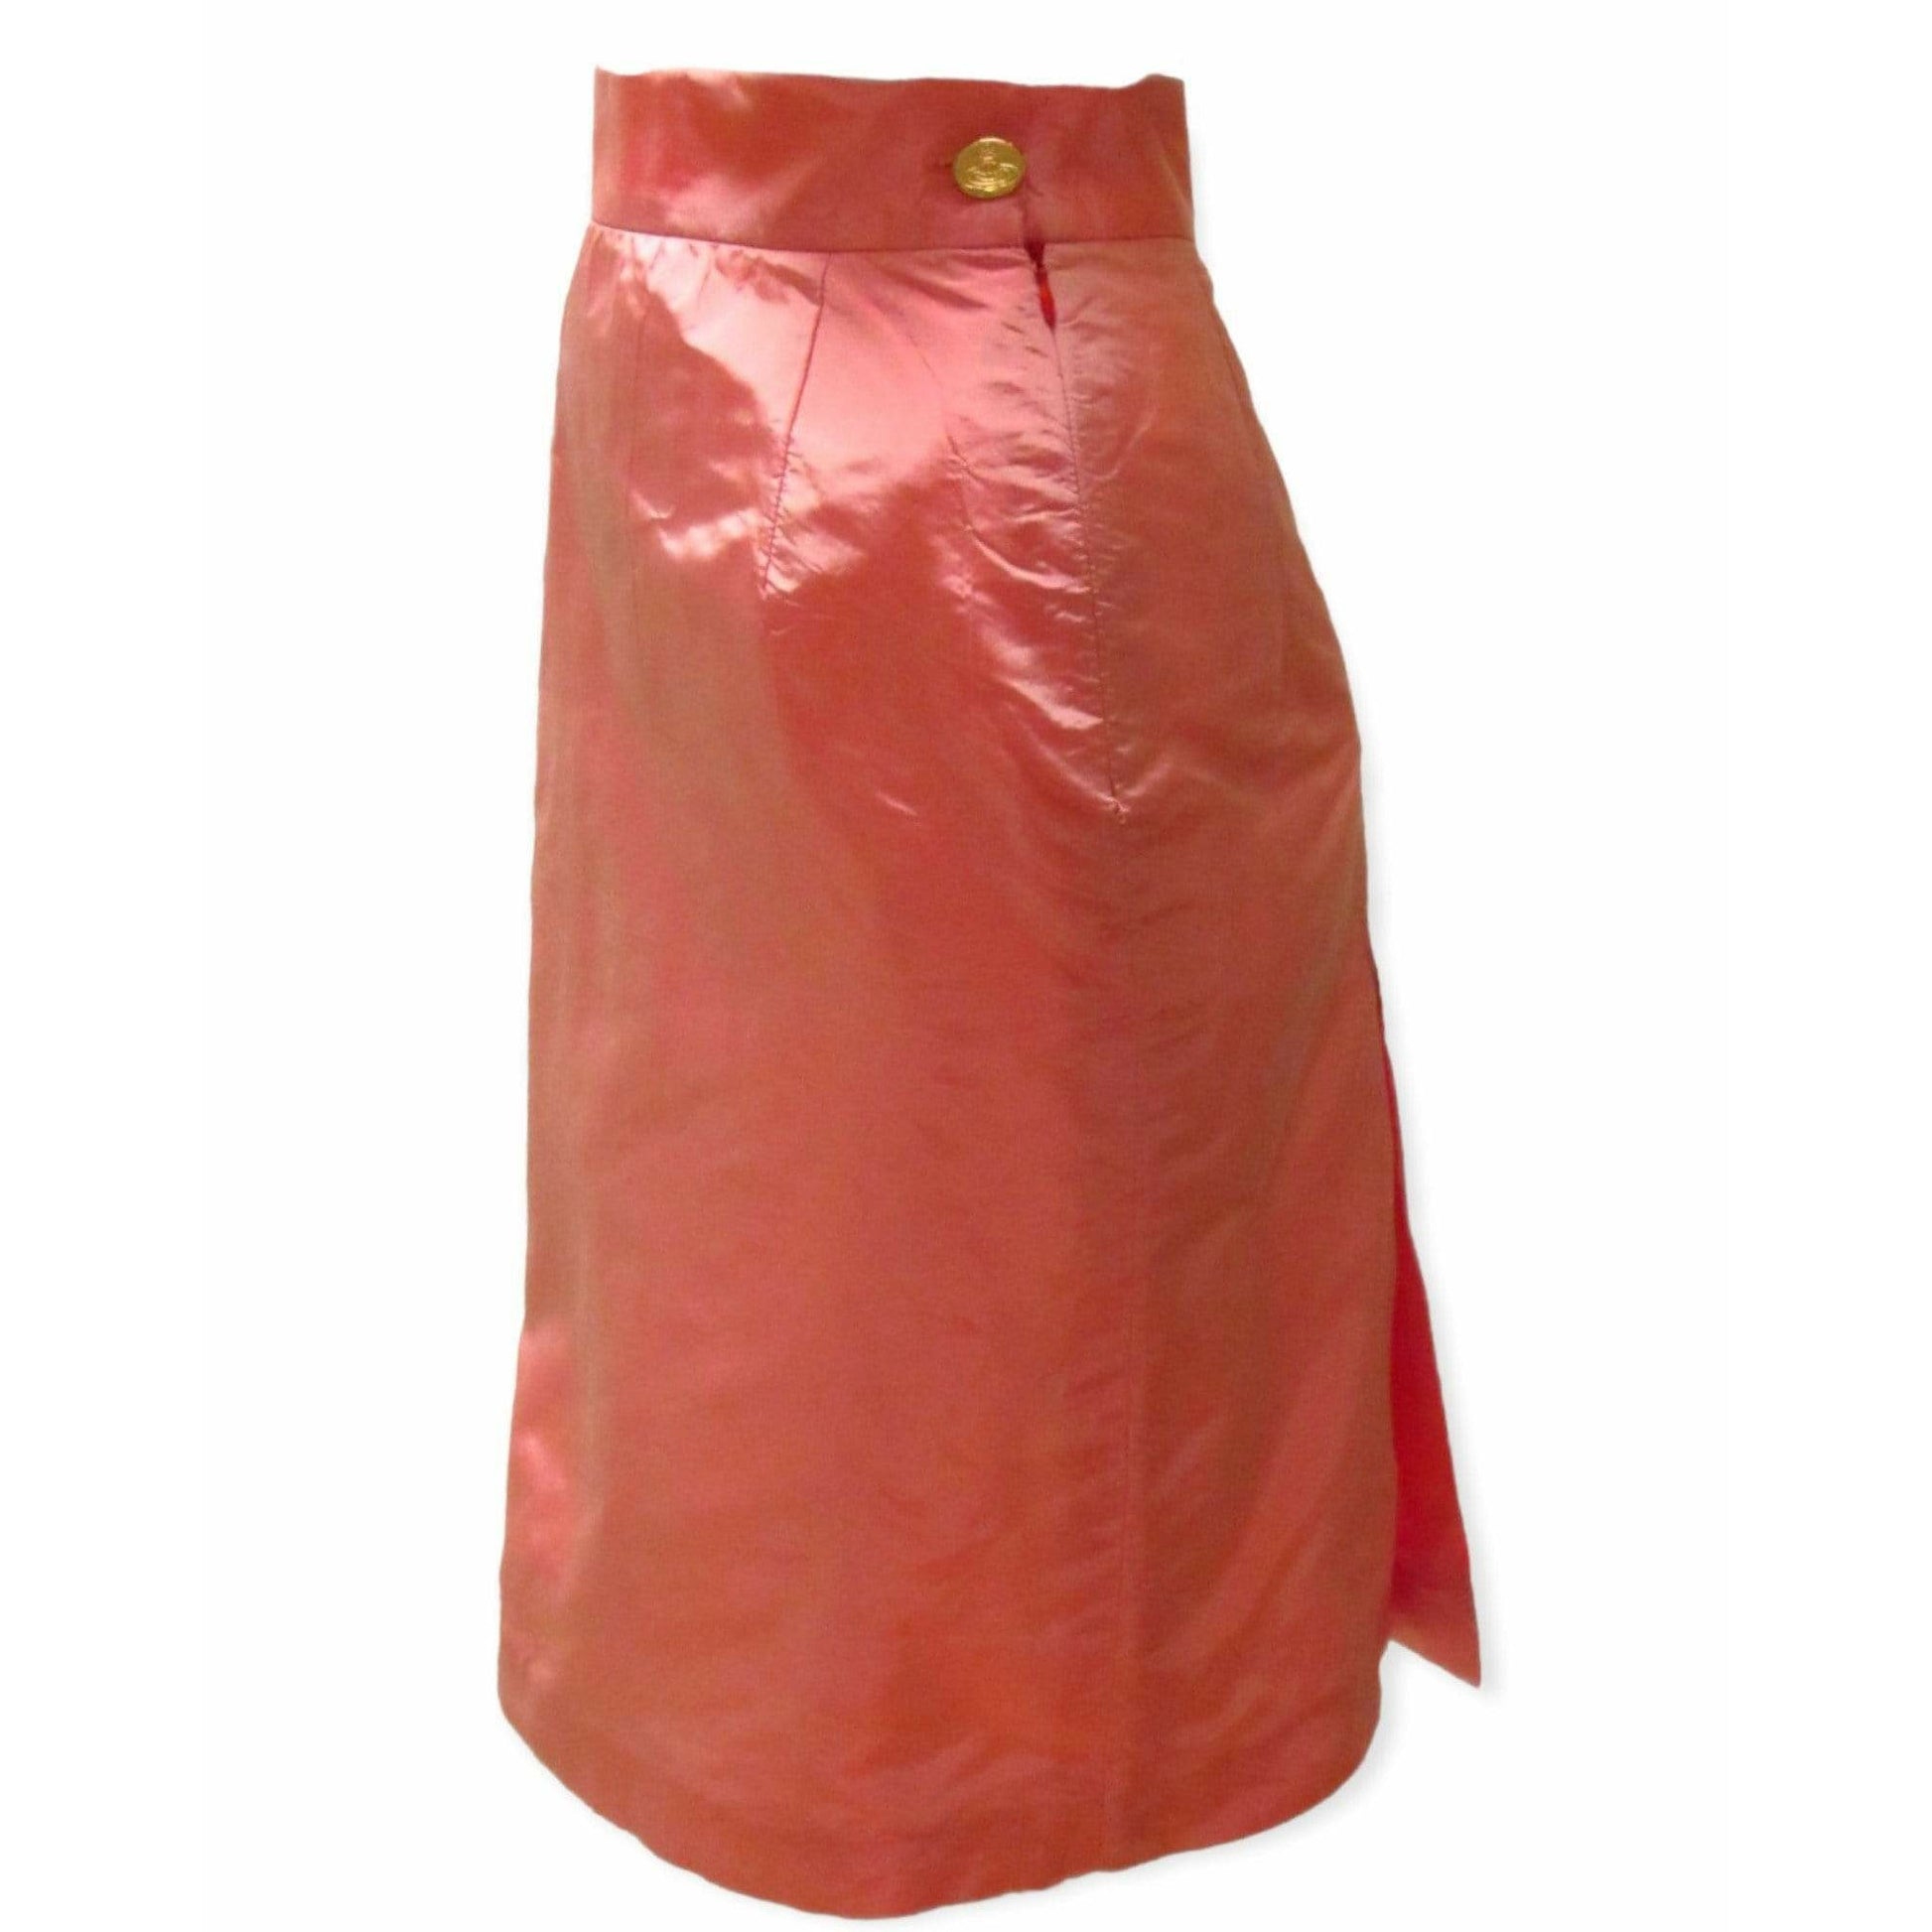 vivienne-westwood-pink-satin-skirt Skirts Sienna